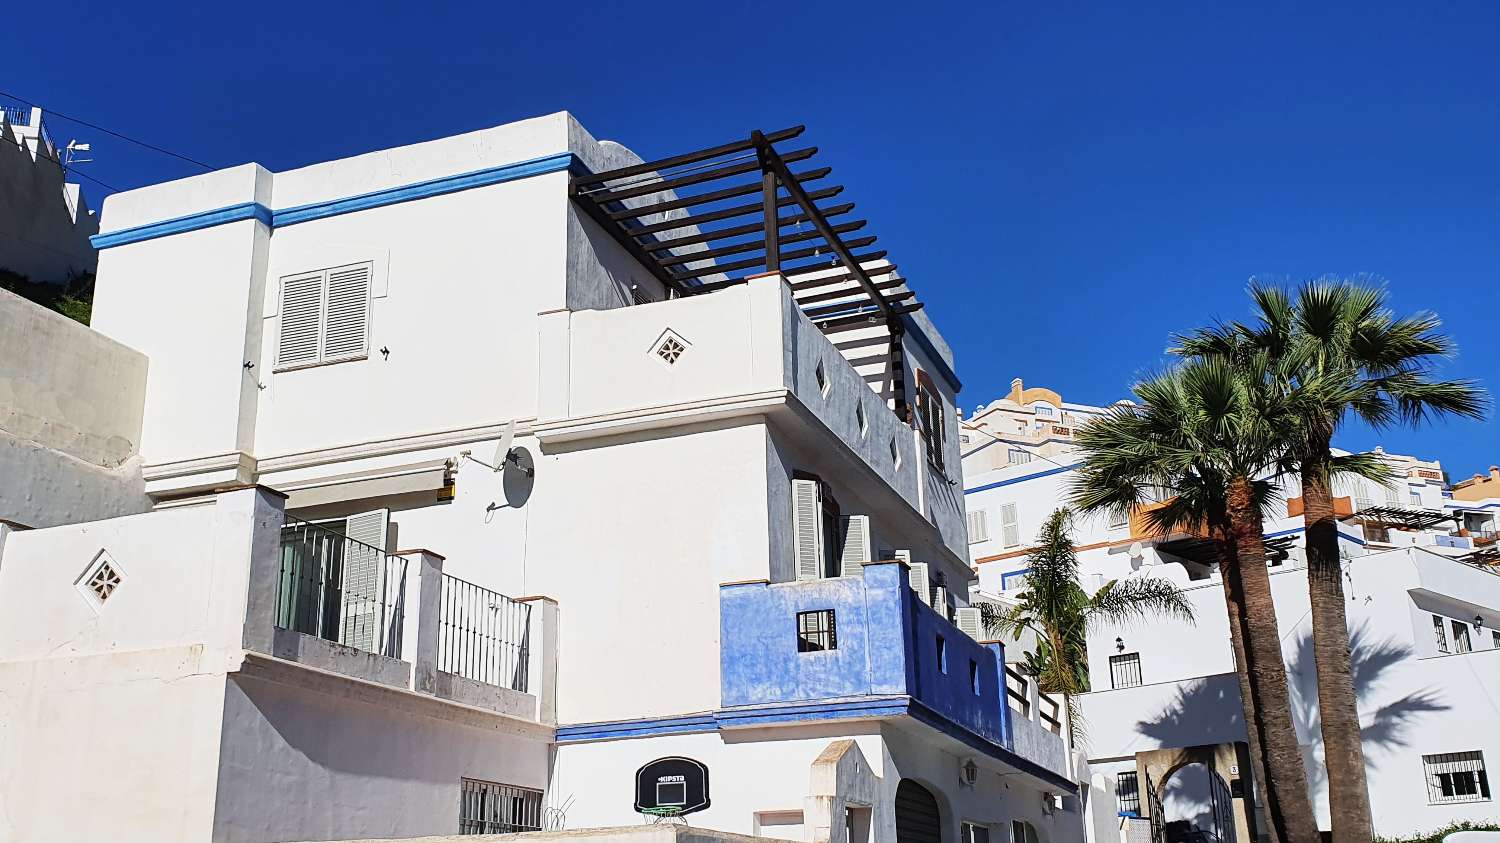 Lägenhet till salu i Almuñecar med stor terrass och nära San Cristobal-stranden